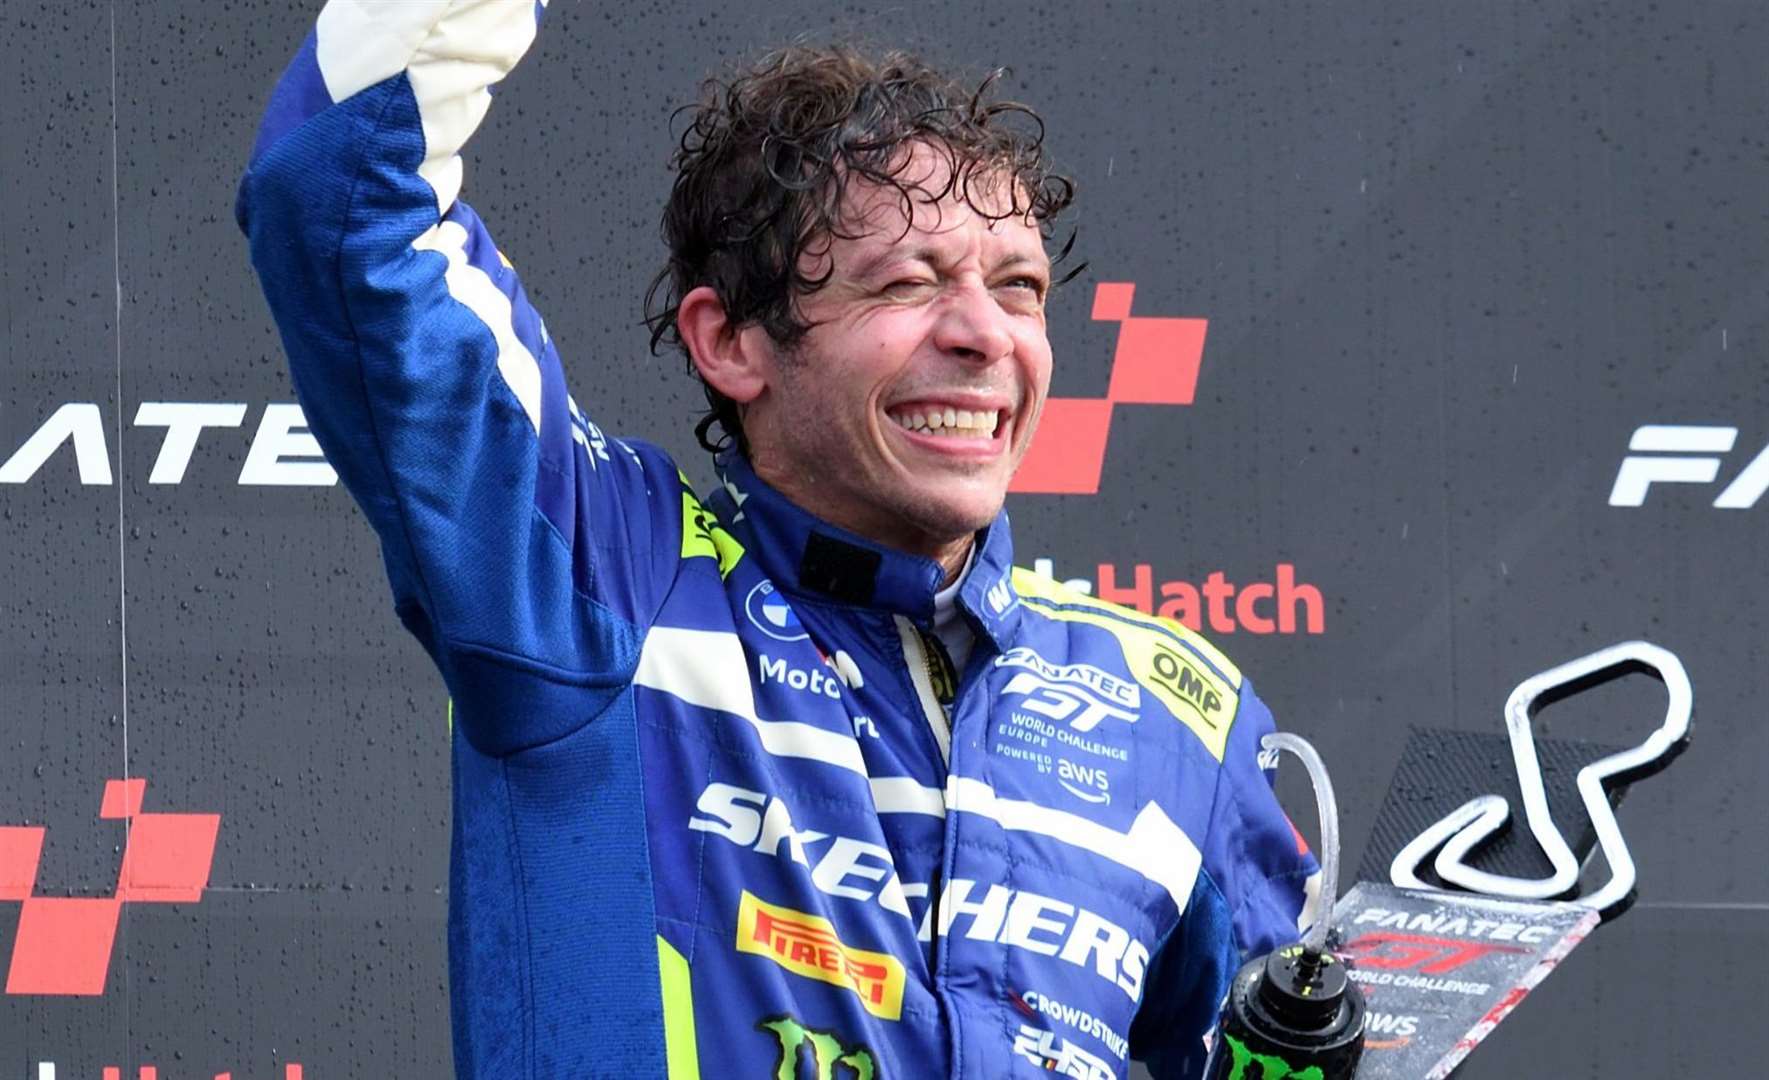 Rossi celebrates his podium finish on the Brands Hatch podium. Picture: Simon Hildrew